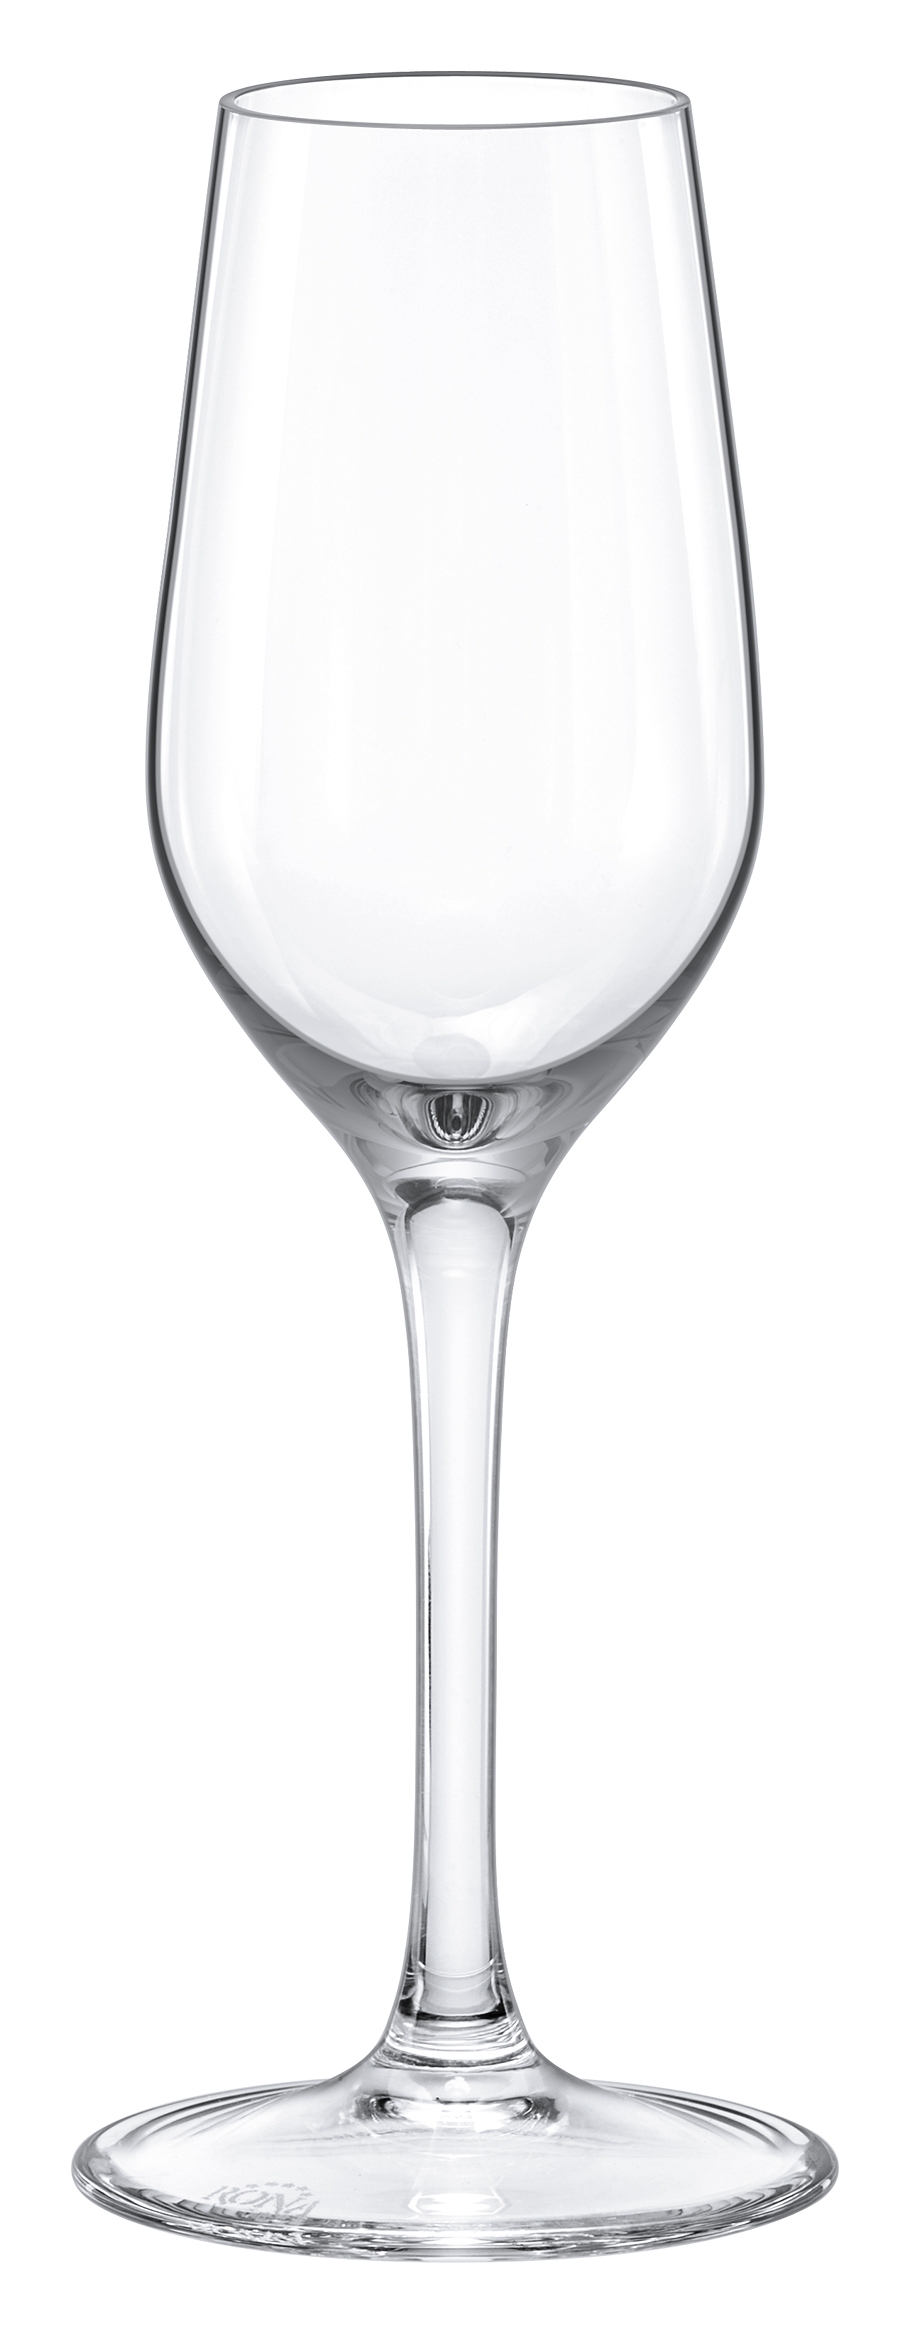 Ποτήρι Λευκού Κρασιού Γυάλινο Διάφανο Ratio Max Home 340ml RN63390340 (Σετ 6 Τεμάχια) (Υλικό: Γυαλί, Χρώμα: Διάφανο , Μέγεθος: Κολωνάτο) - Max Home - RN63390340